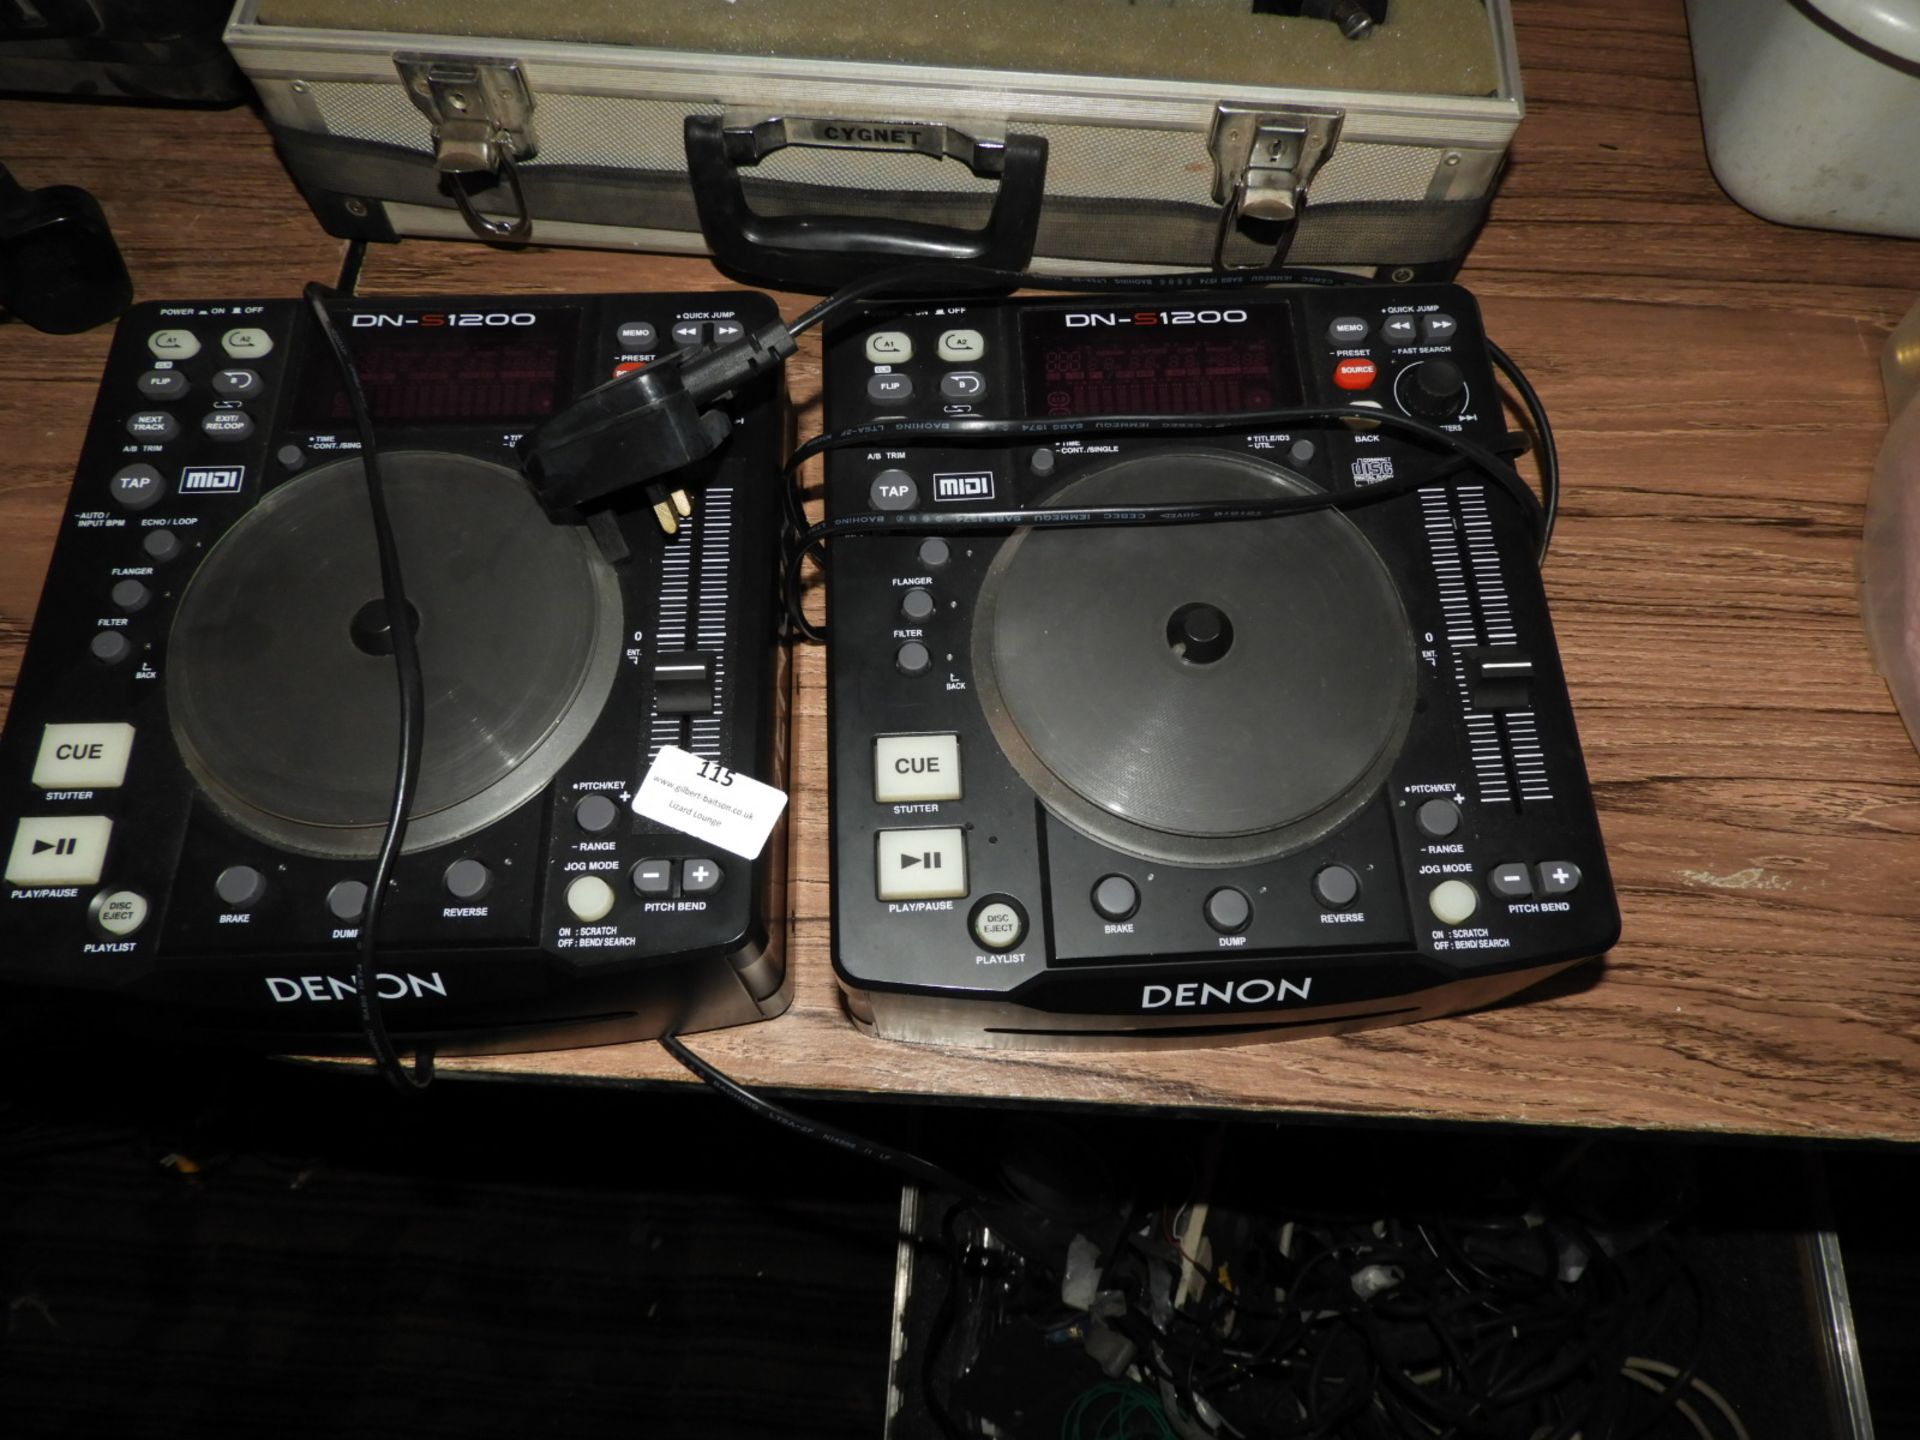 *Two Denon DN-S1200 CD Mixer Units